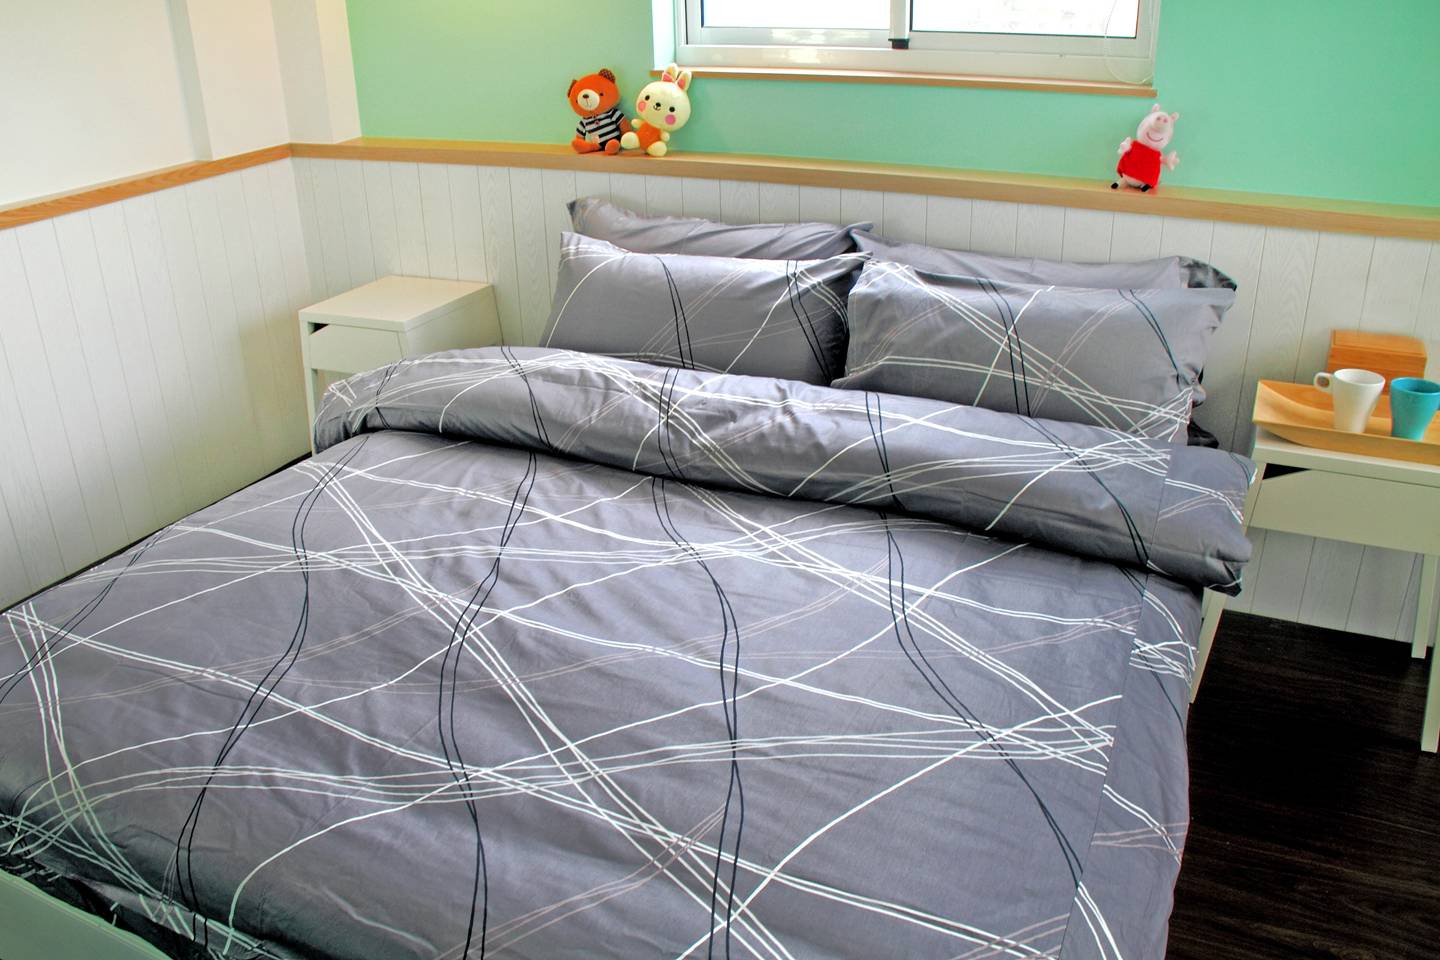 床包兩用被組 / 單人 印花設計款 / 幾何線條 100%精梳棉  單人床包兩用被組